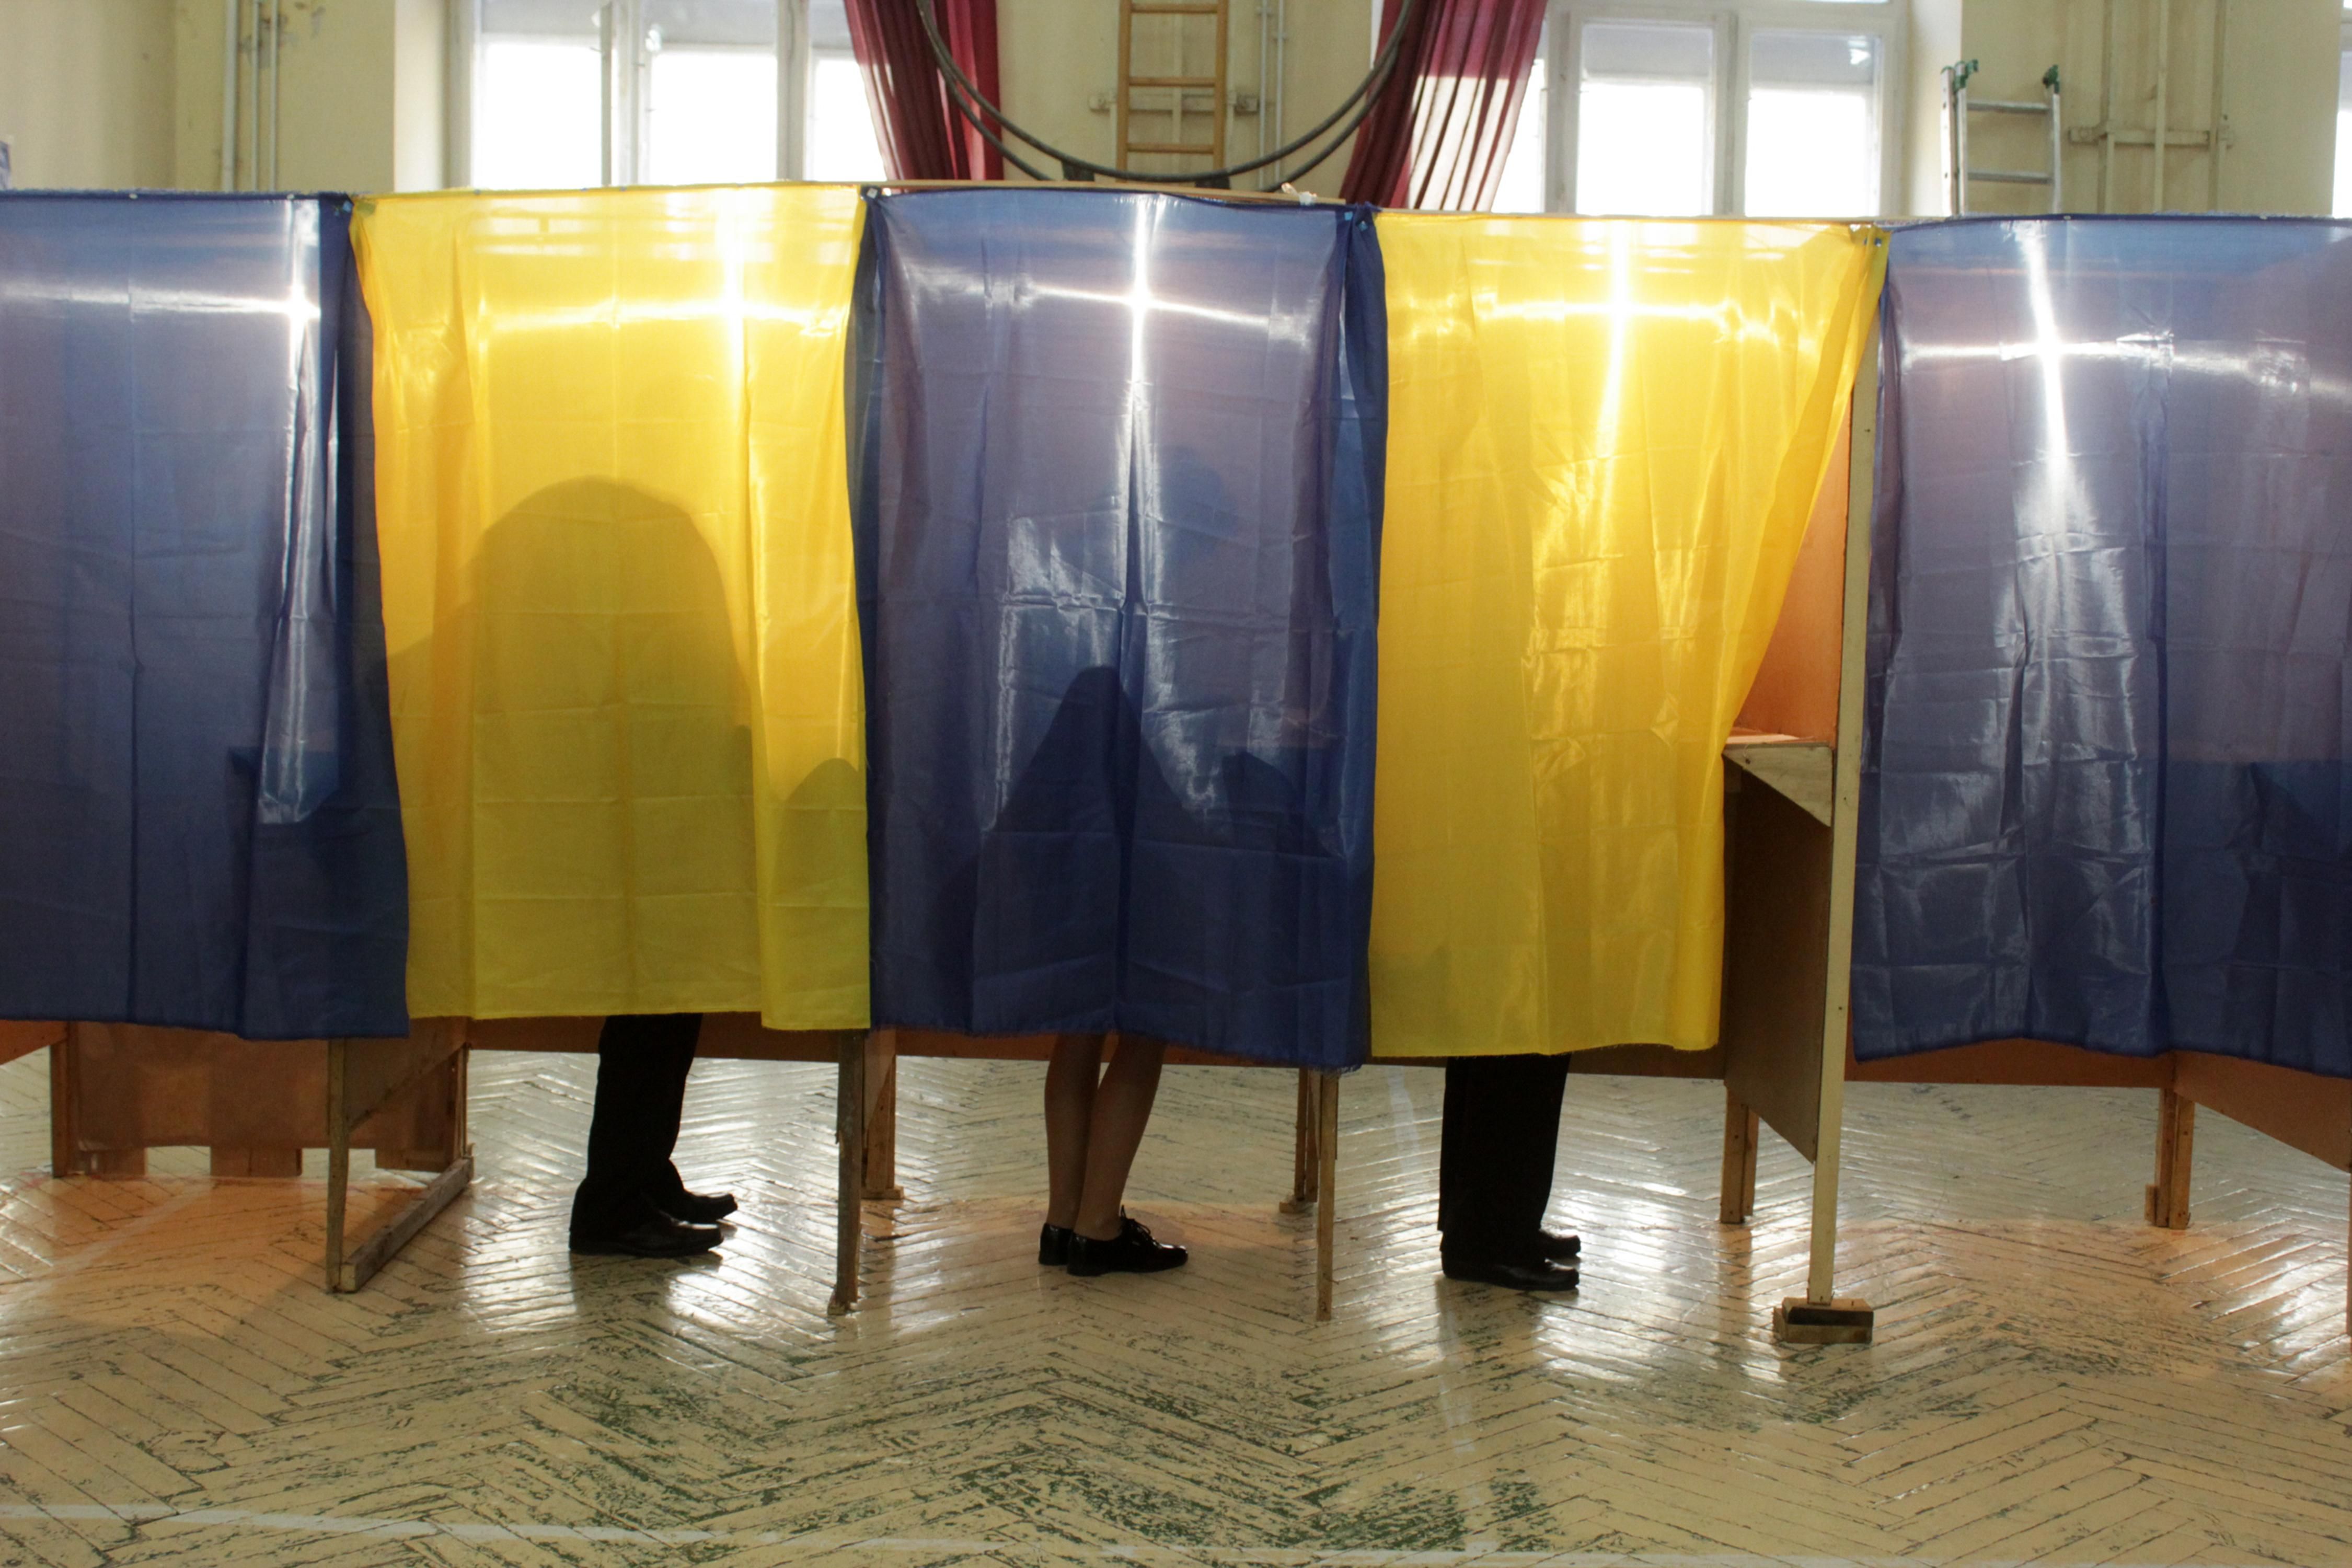 Будут ли досрочные выборы: эксперт указал на важную деталь